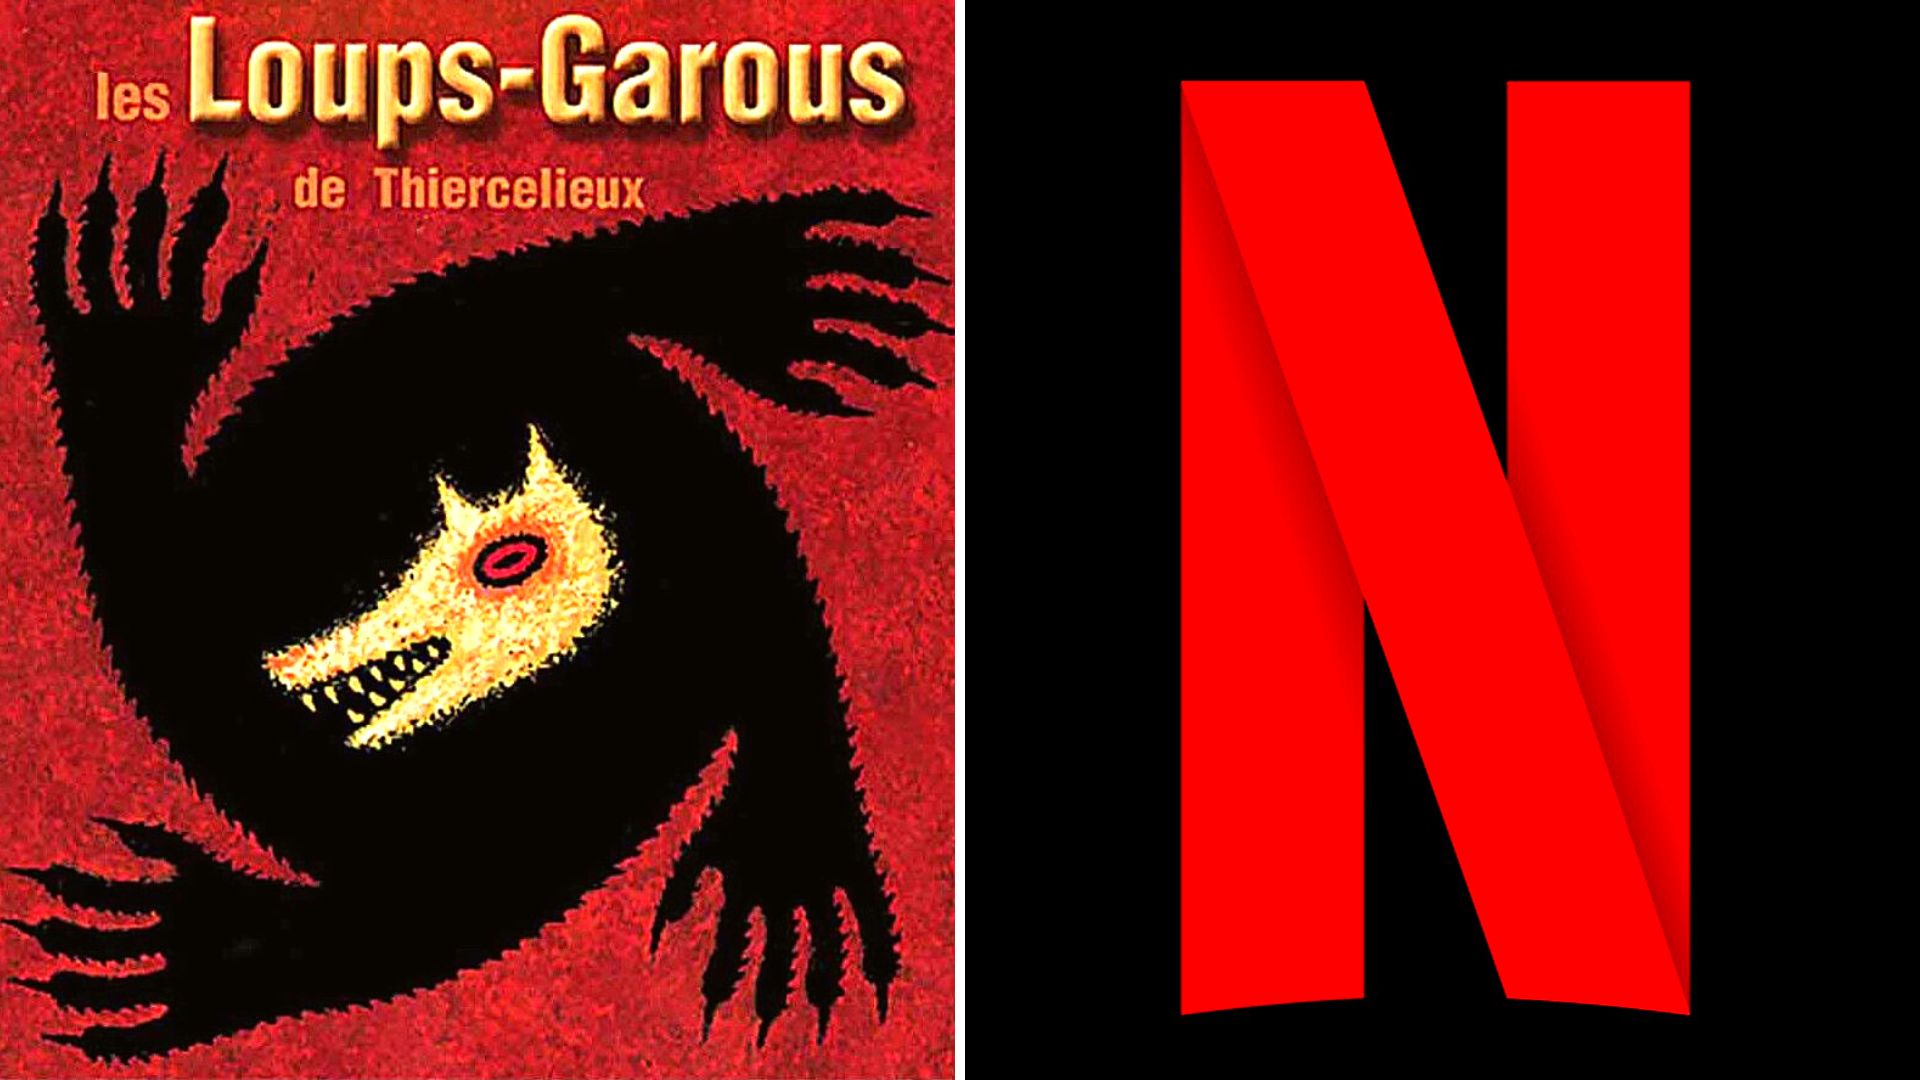 Le jeu "Les Loups-Garous" va être adapté en film par Netflix